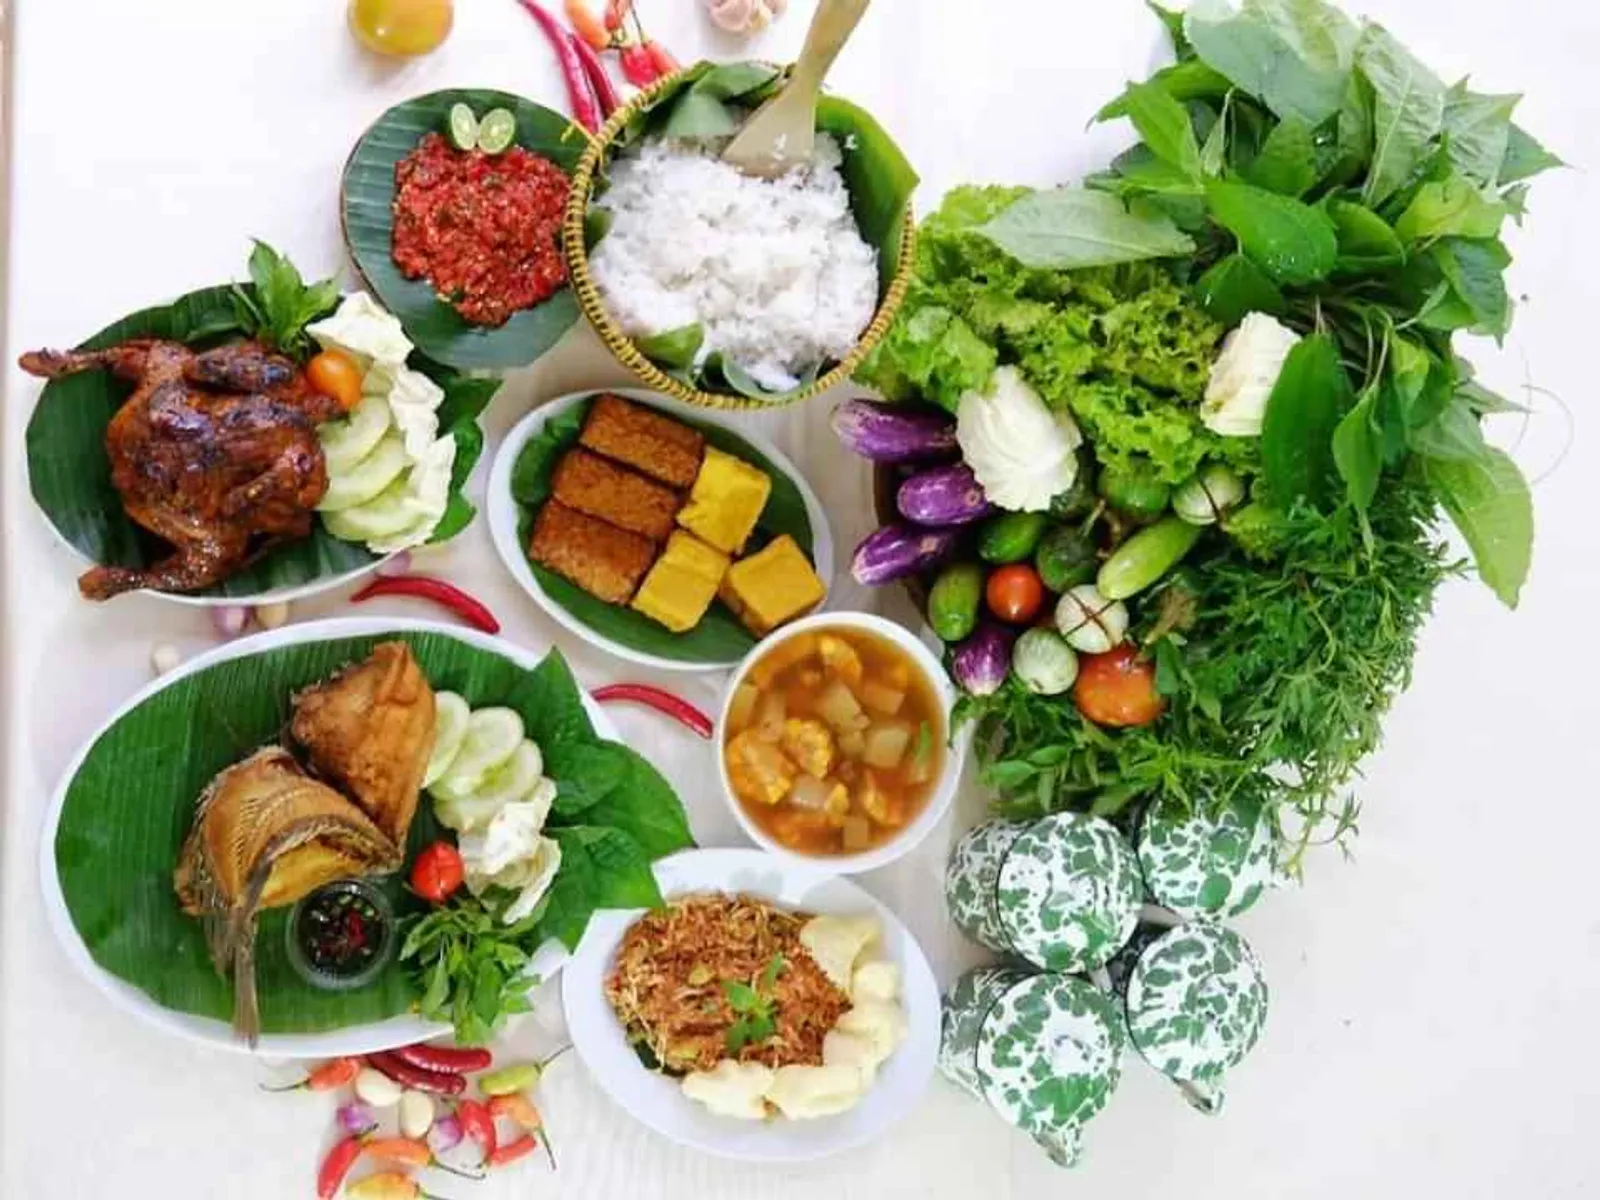 13 Rekomendasi Restoran All You Can Eat Murah di Bogor